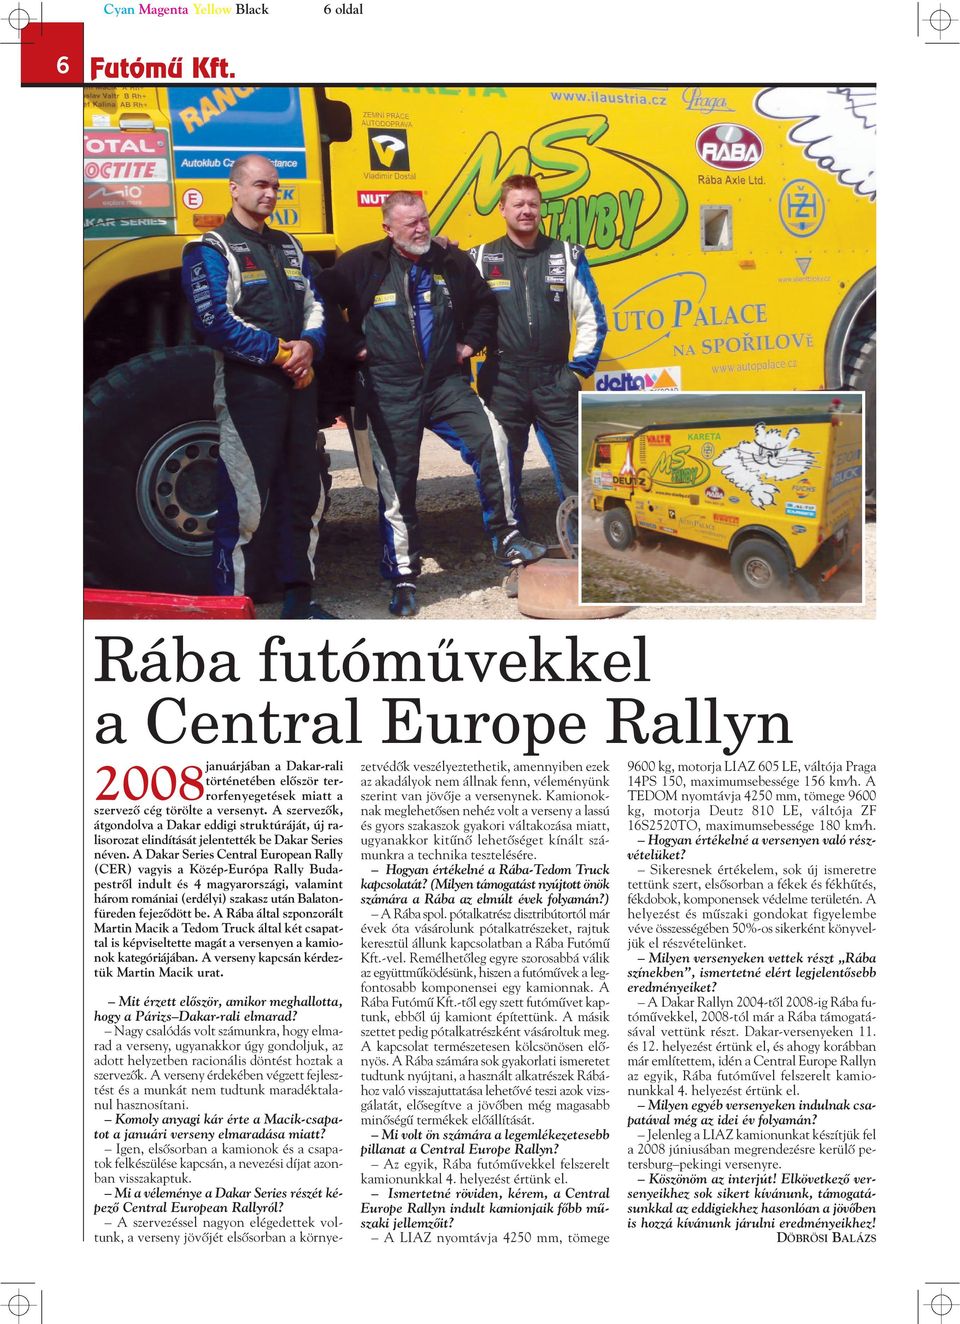 A Dakar Series Central European Rally (CER) vagyis a Közép-Európa Rally Budapestrôl indult és 4 magyarországi, valamint három romániai (erdélyi) szakasz után Balatonfüreden fejezôdött be.